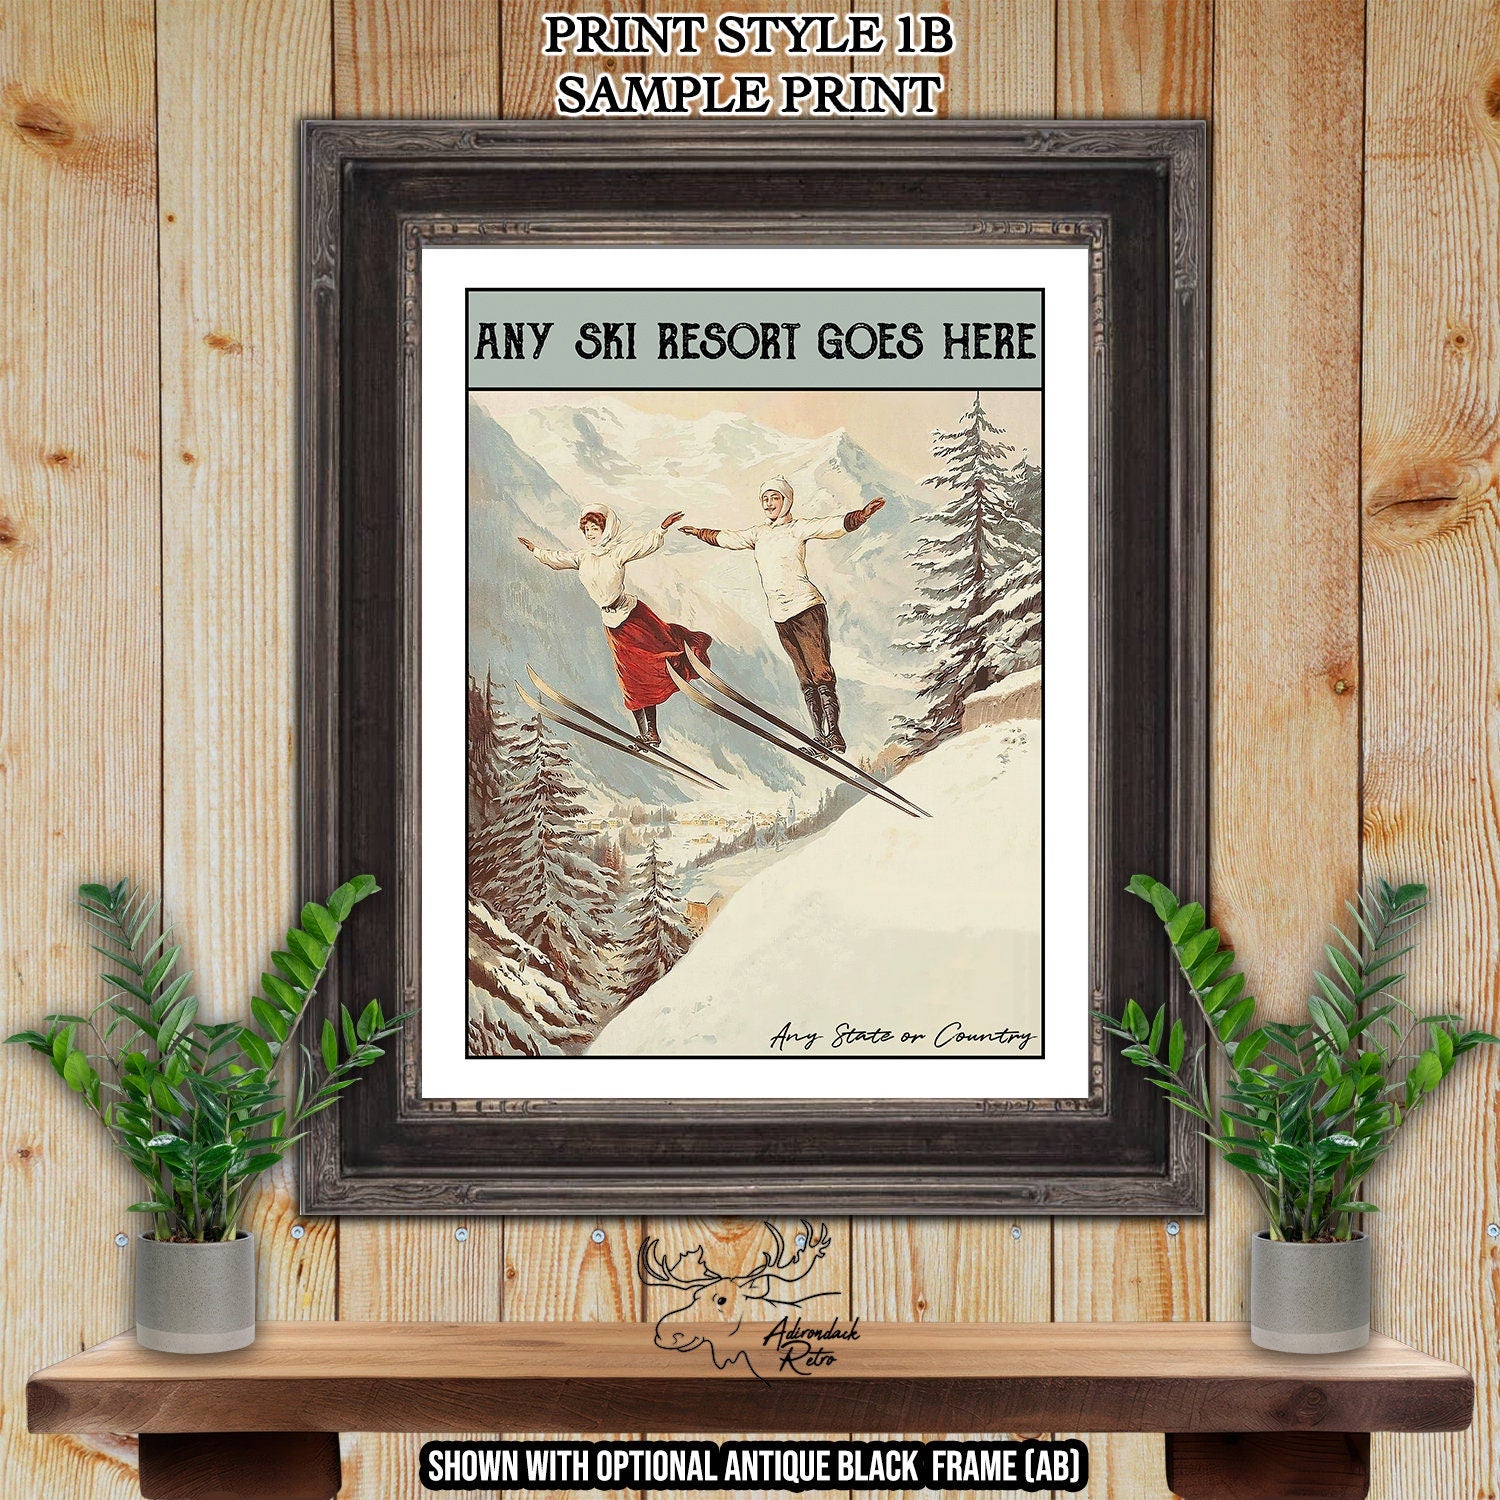 Les Contamines France Retro Ski Resort Art Print